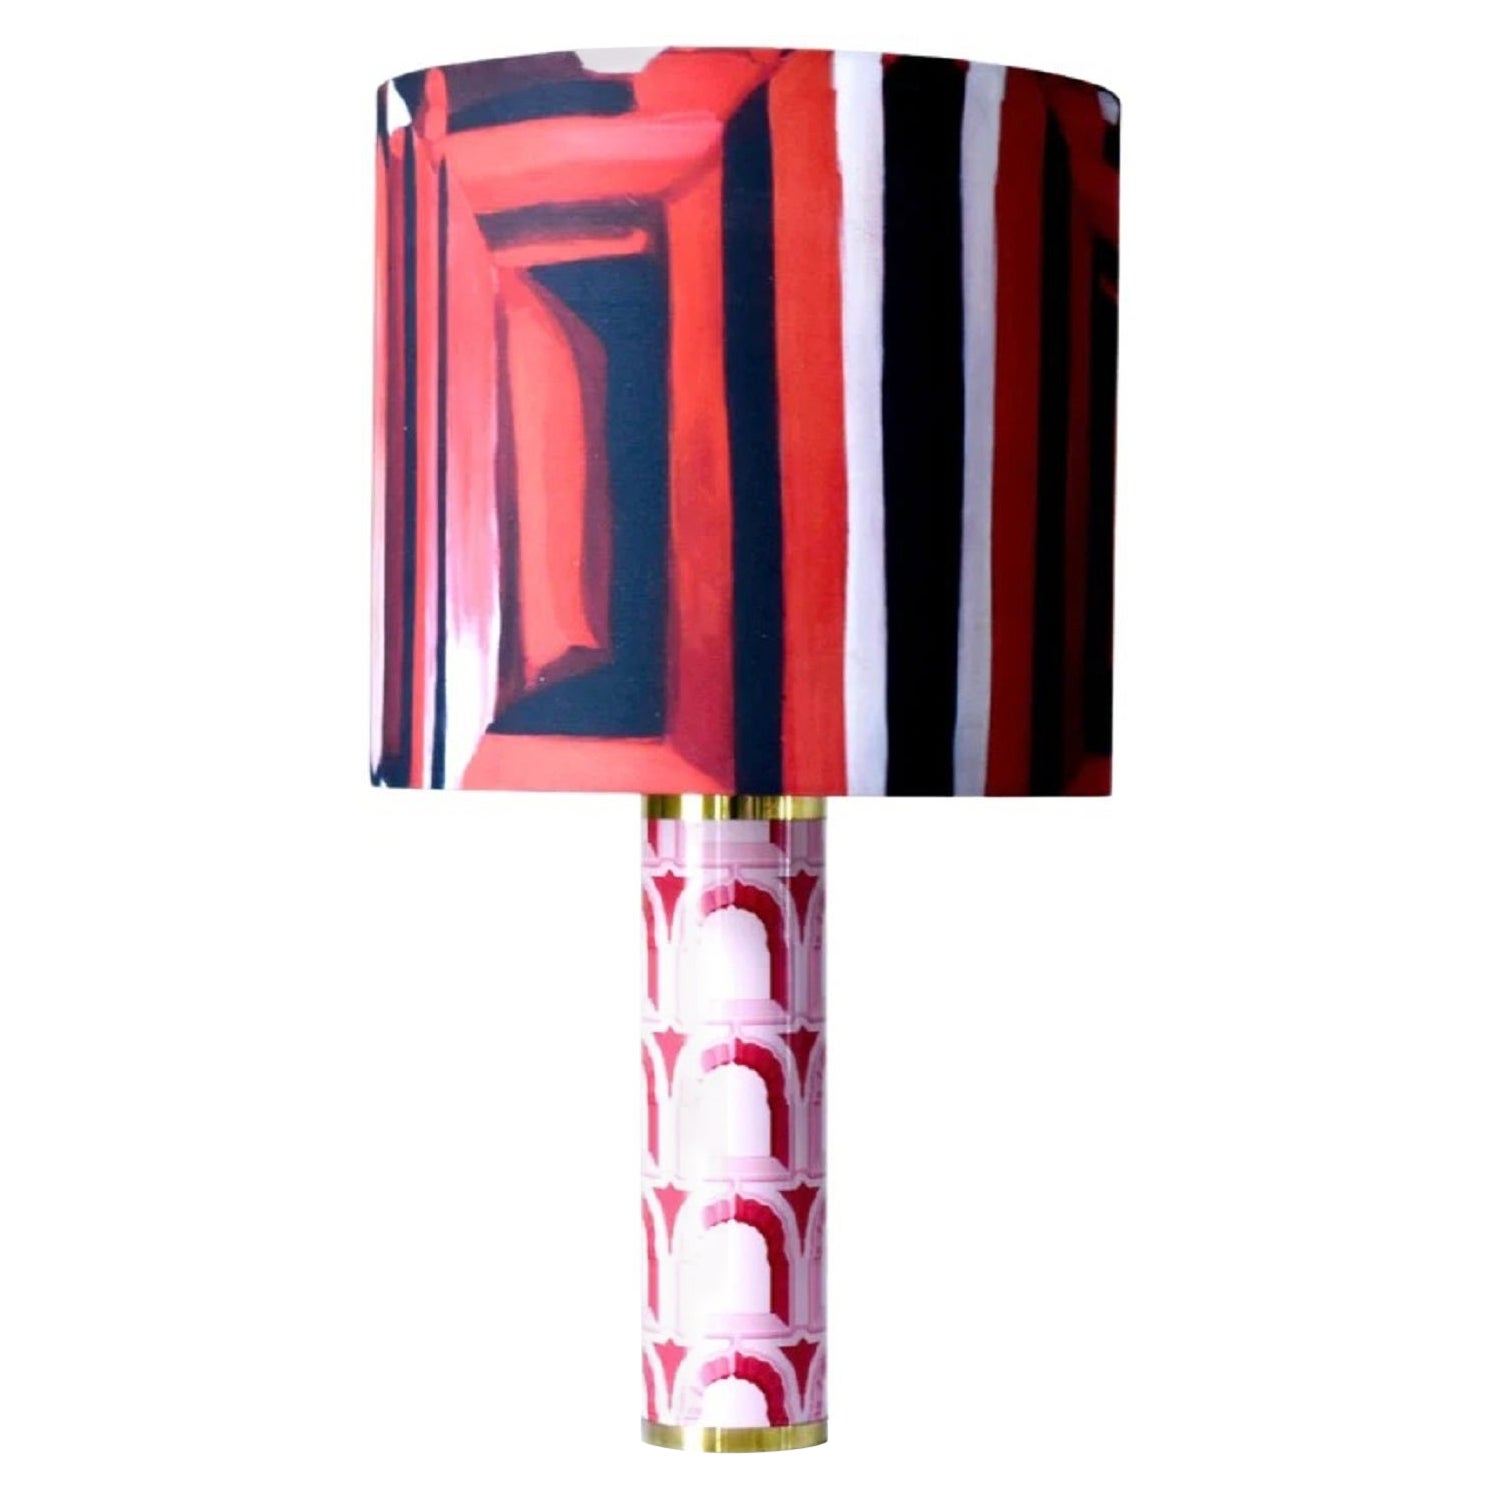 „Architektendetails“-Tischlampe in Rot von Ashley Longshore x Ken Fulk, 2021